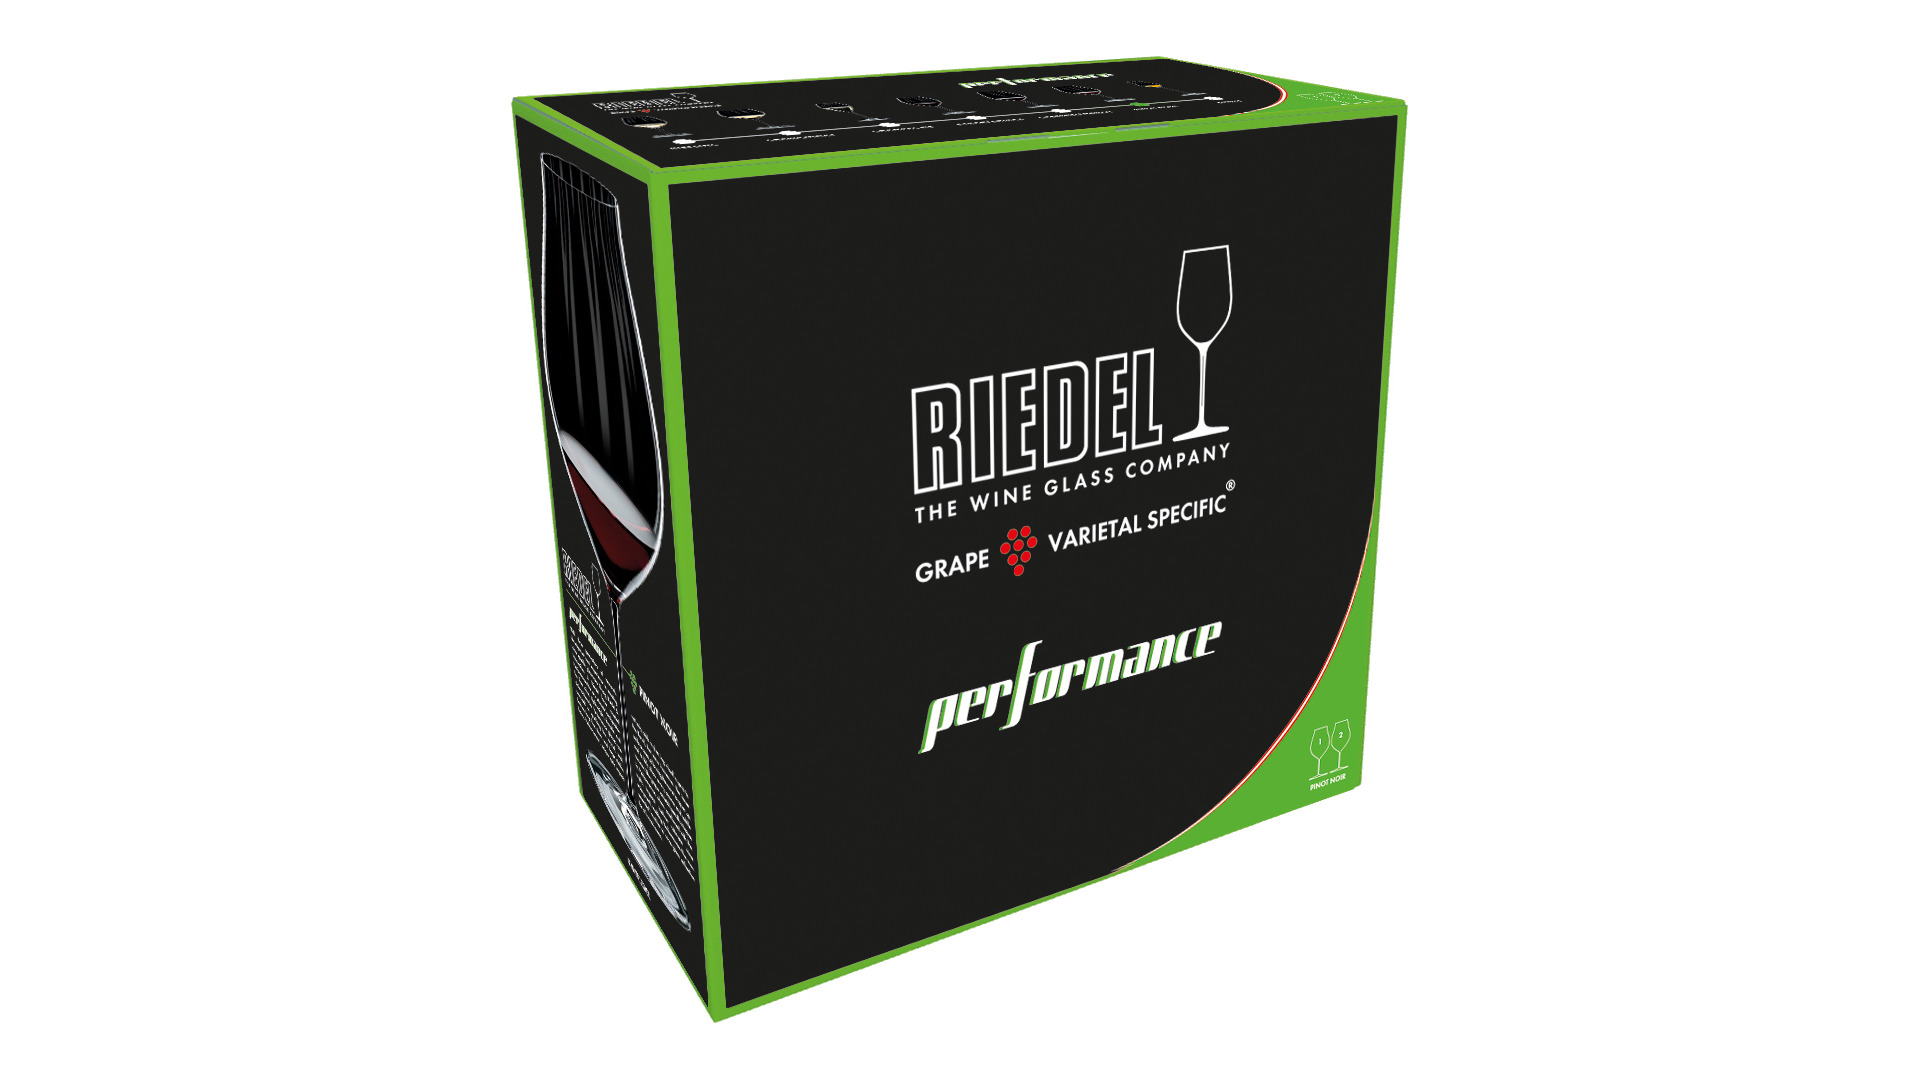 Набор бокалов для красного вина Riedel Performance Pinot Noir 830мл,H24,5см, 2шт, стекло хрустальное